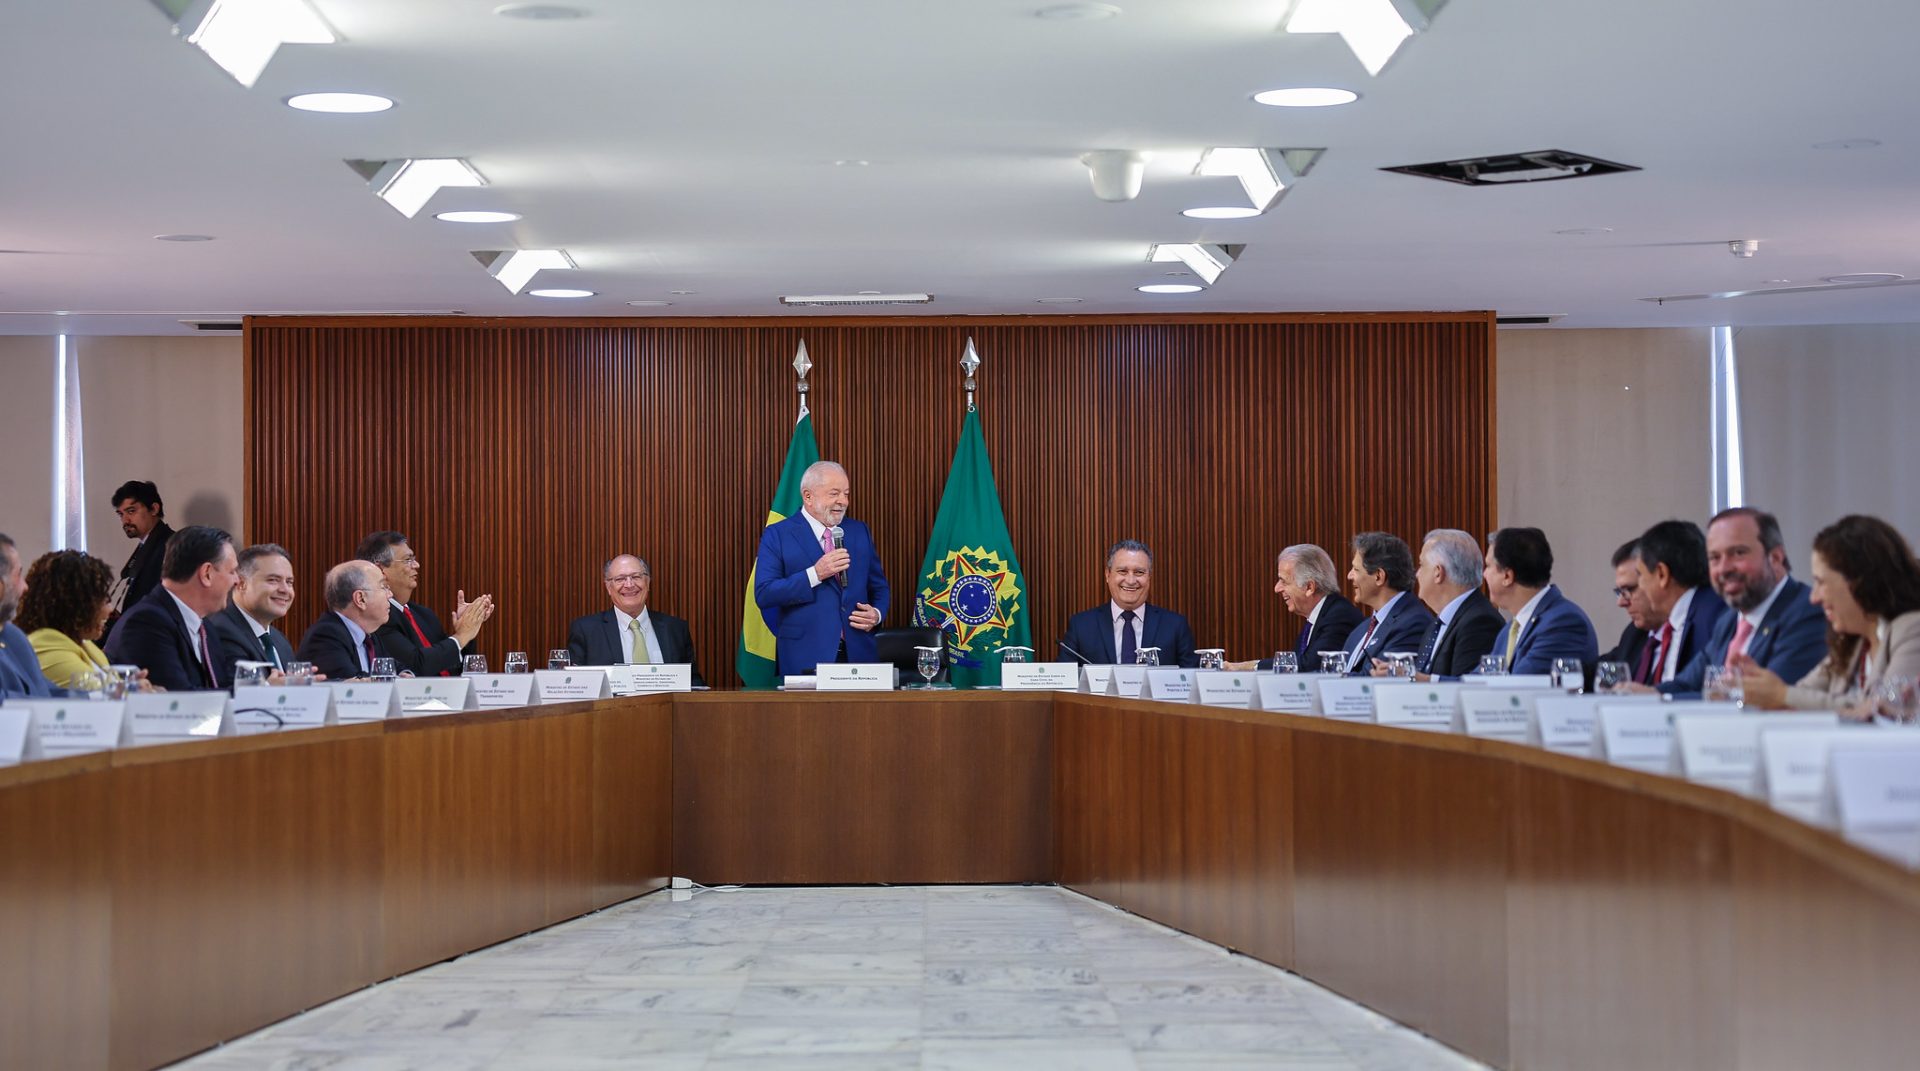 Presidente da República Luiz Inácio Lula da Silva e ministros, durante Reunião Ministerial no Palácio do Planalto, Brasília - DF - Foto: : Ricardo Stuckert/PR